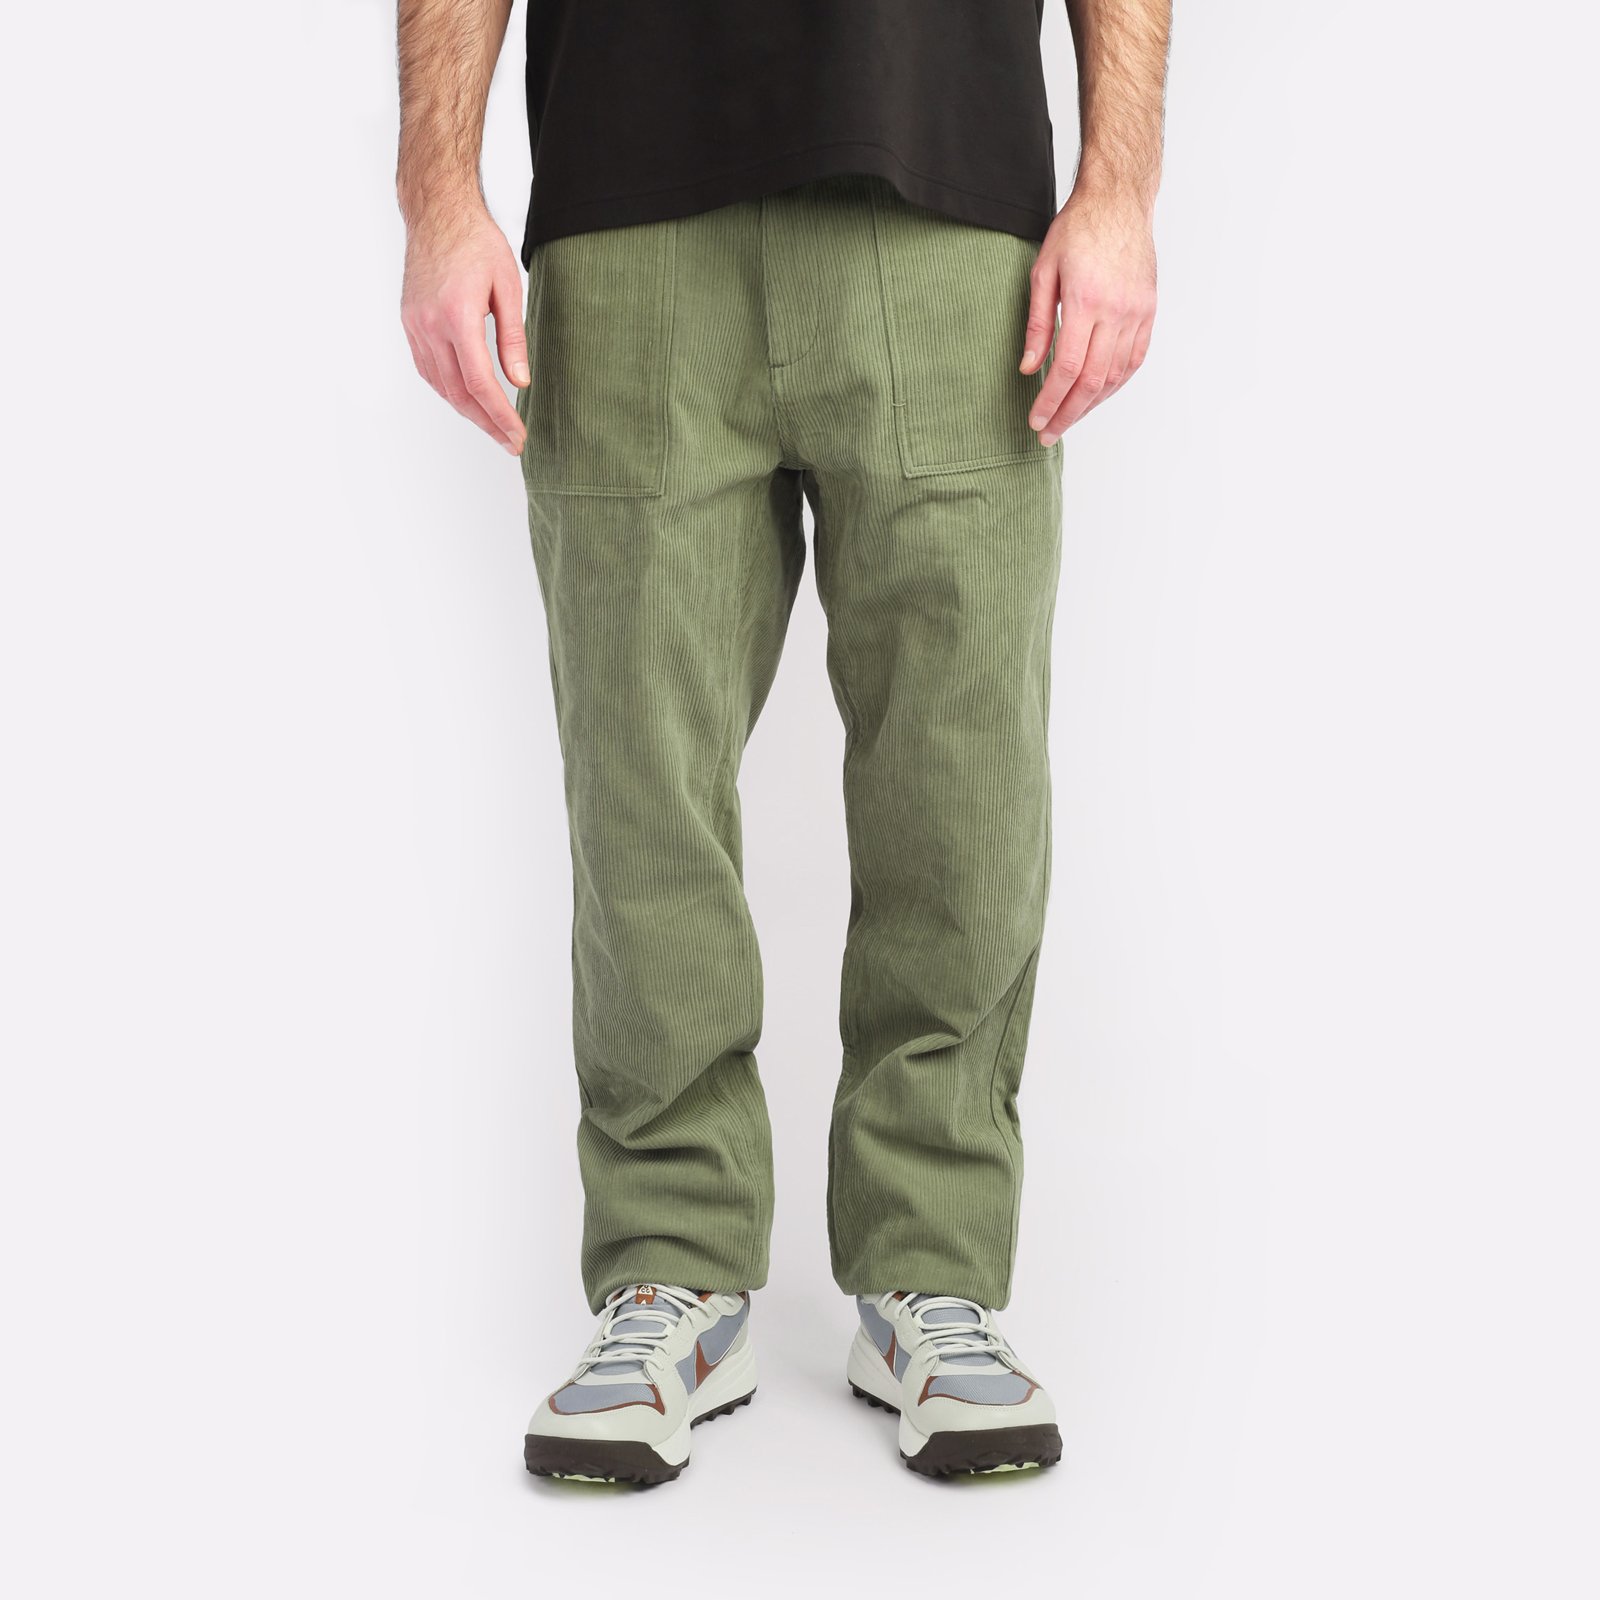 мужские брюки Alpha Industries Corduroy Fatigue Pant  (MBC53501CO-green)  - цена, описание, фото 1